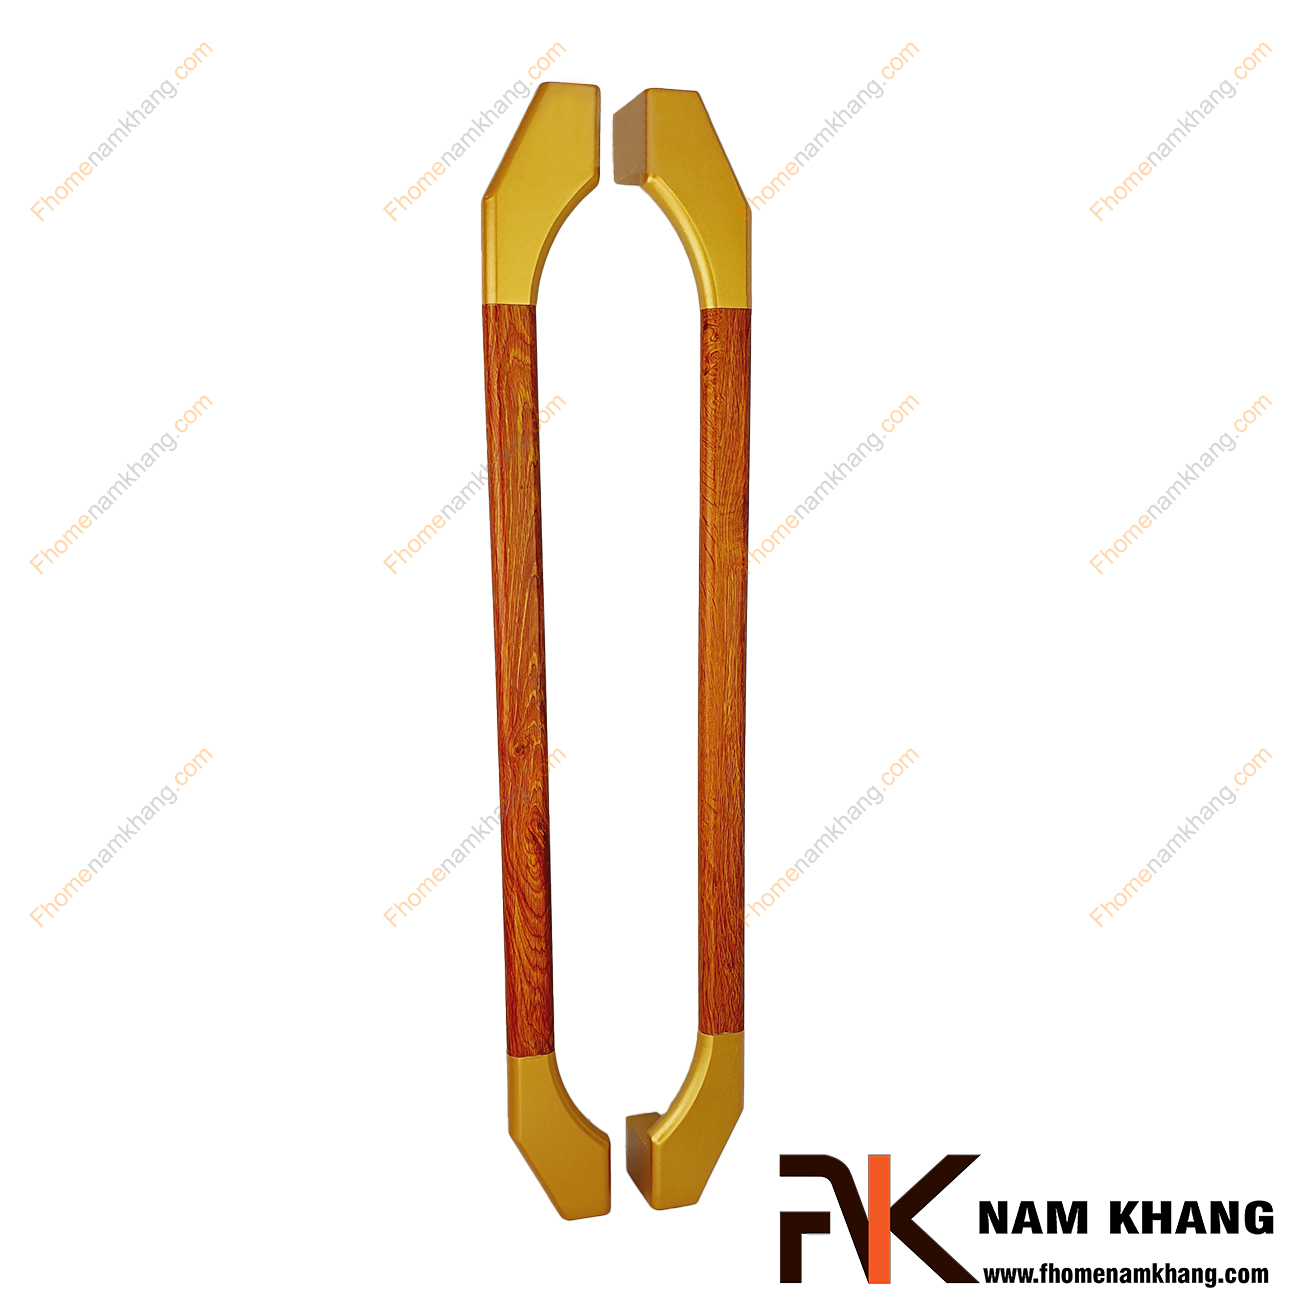 Tay nắm cửa chính bằng inox màu vàng mờ phối gỗ đỏ NKC023L-GD đa dạng trong phong cách phối hợp, có thể sử dụng trên cửa mở 1 cánh, cửa mở 2 cánh hoặc cửa lùa 1 cánh, 2 cánh.